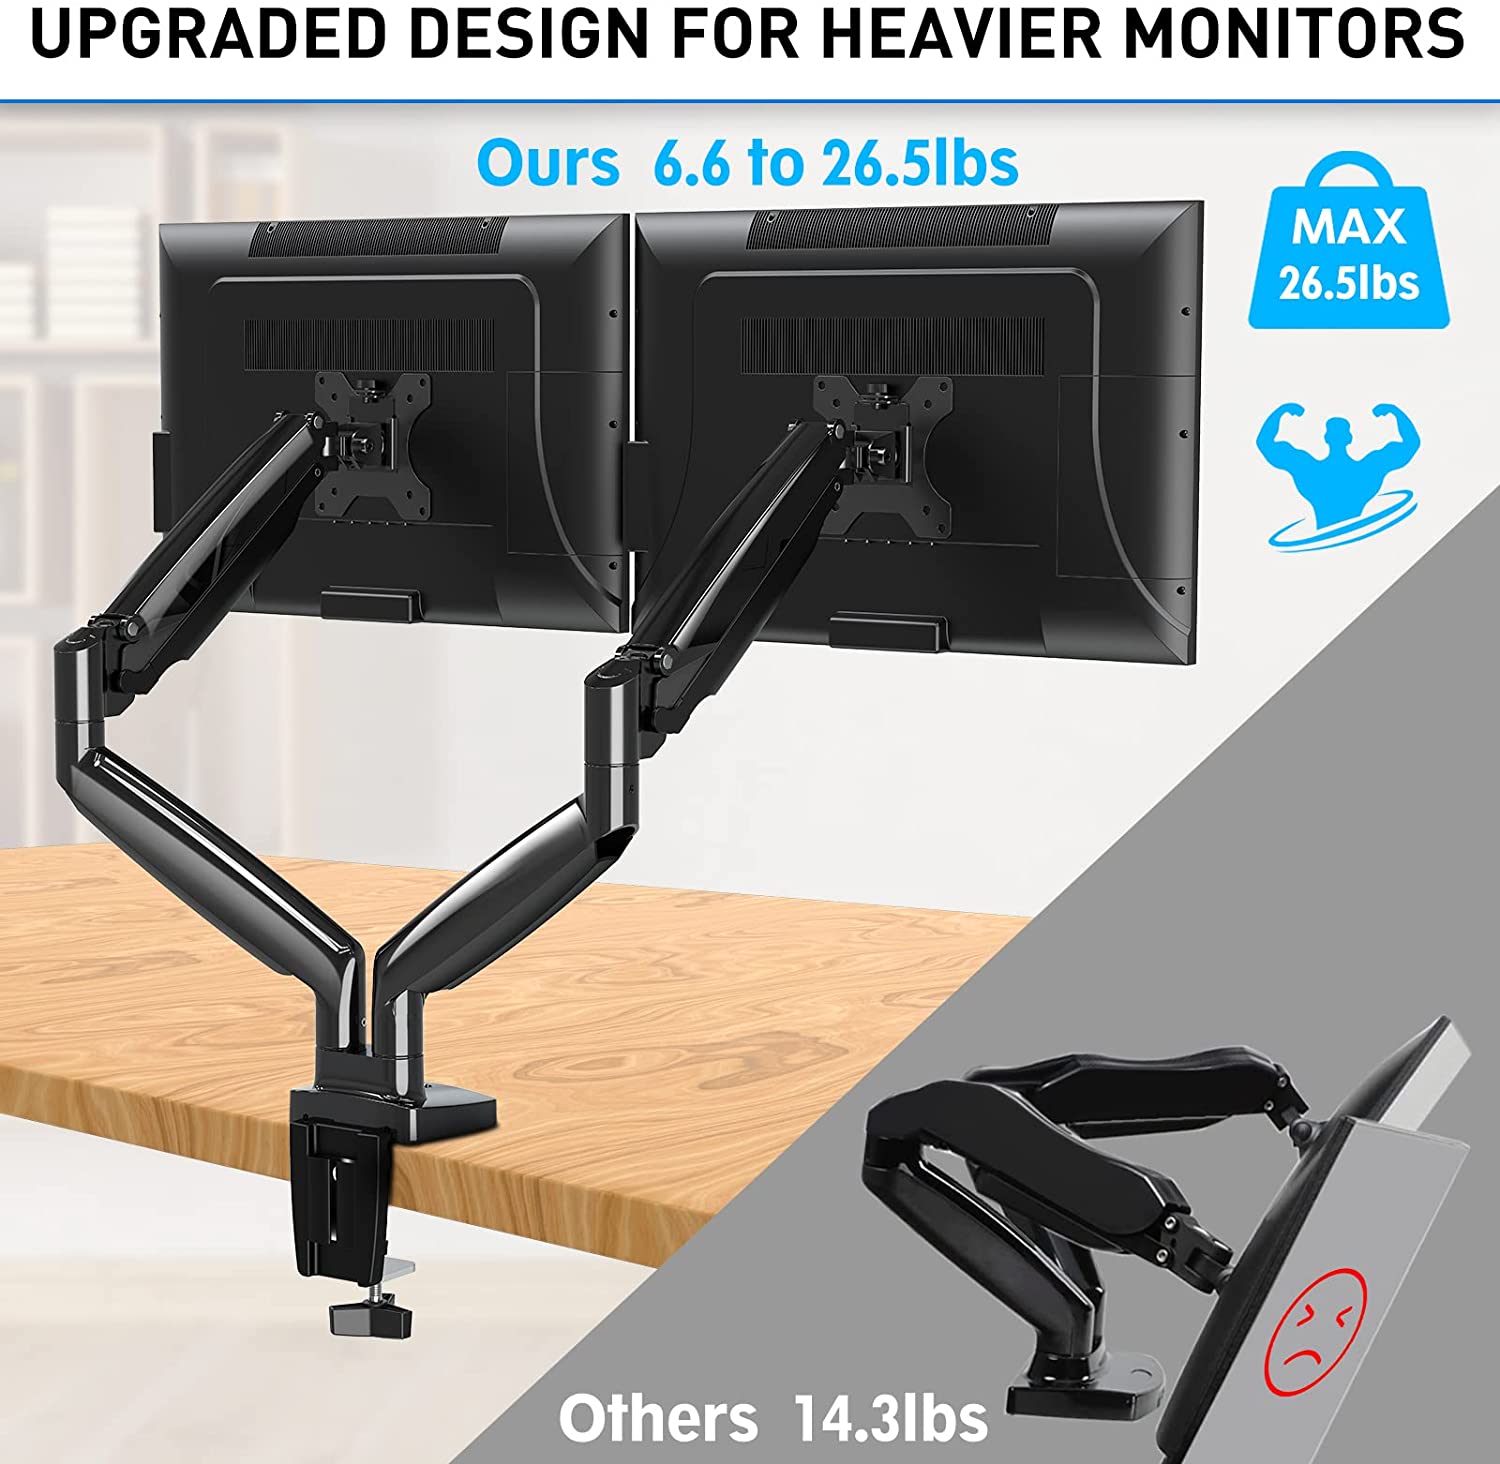 heavy duty monitor desk mount loads up to 26.5 lbs.